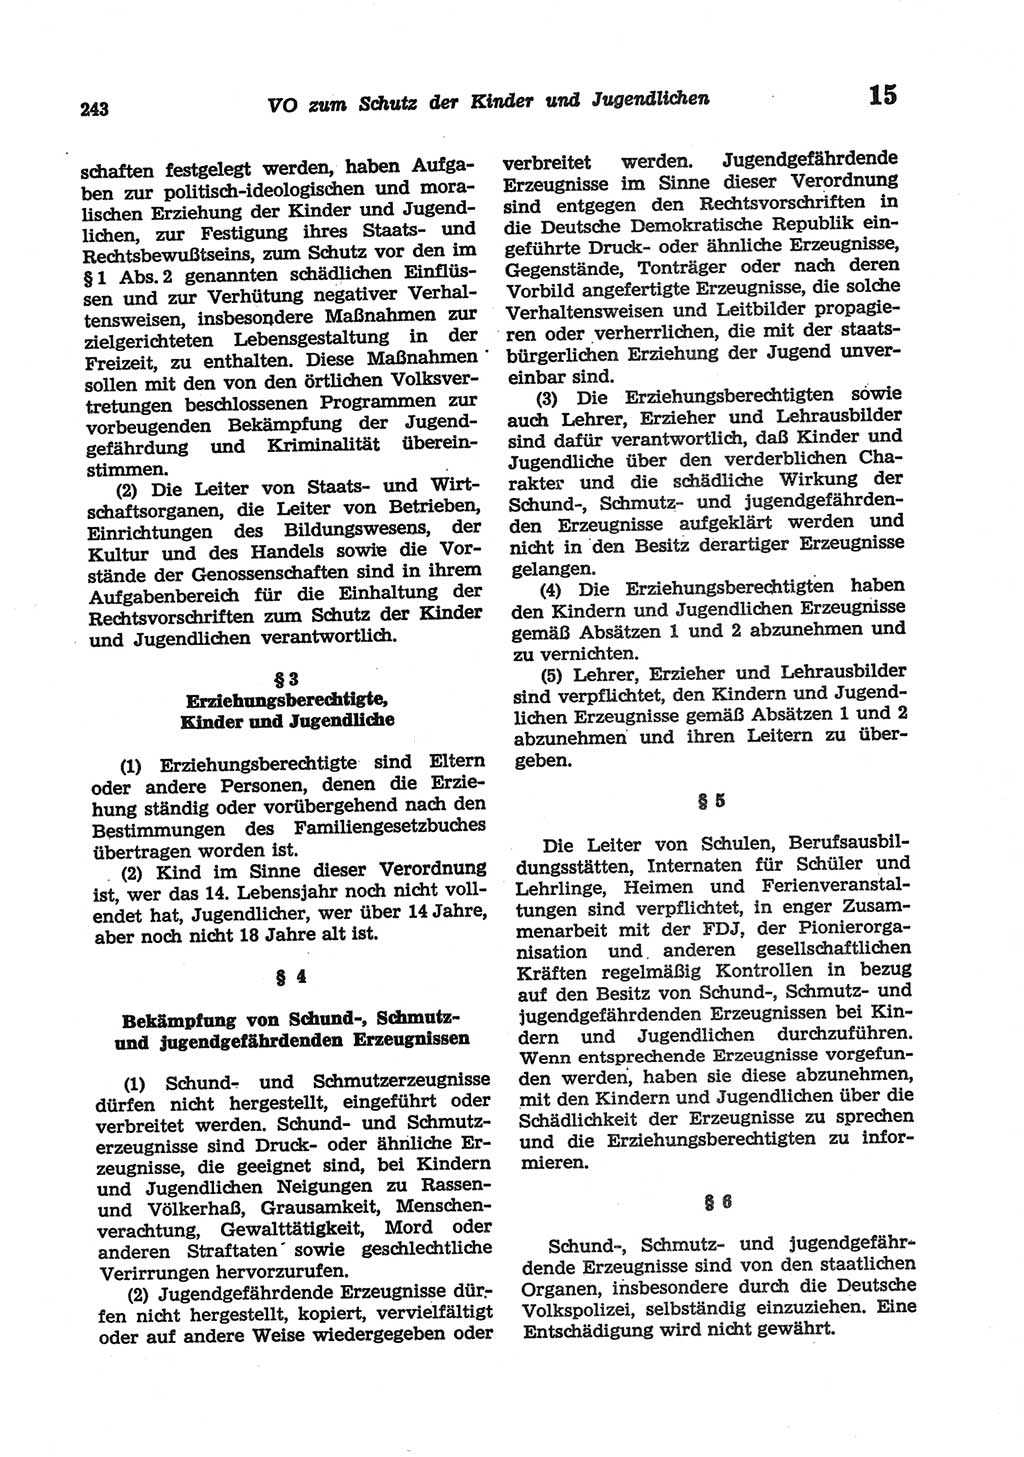 Strafgesetzbuch (StGB) der Deutschen Demokratischen Republik (DDR) und angrenzende Gesetze und Bestimmungen 1977, Seite 243 (StGB DDR Ges. Best. 1977, S. 243)